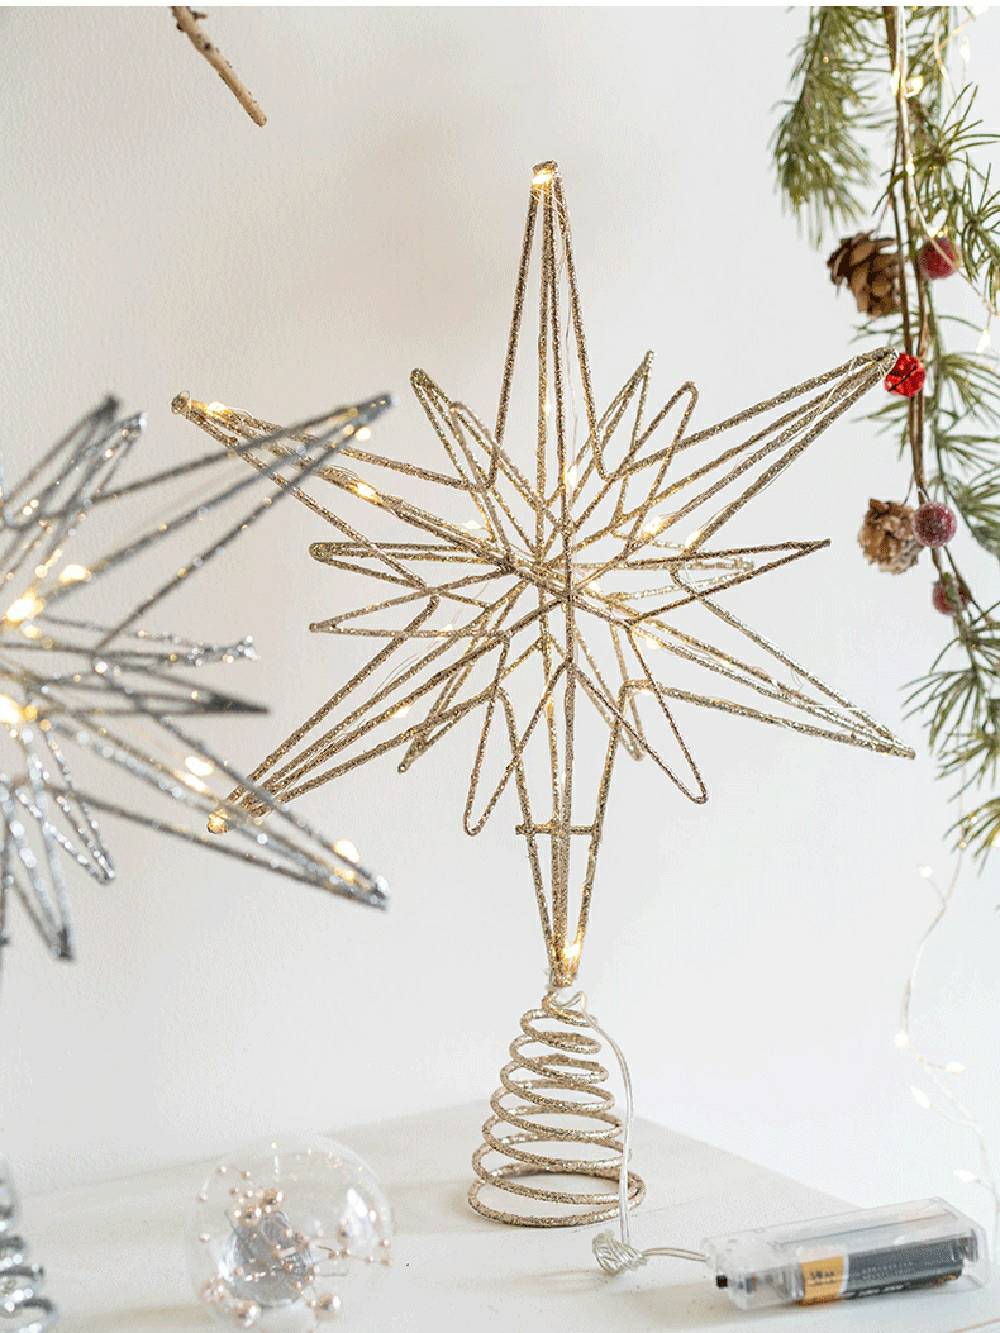 Upplyst stjärnklar jul dekorativt konststycke